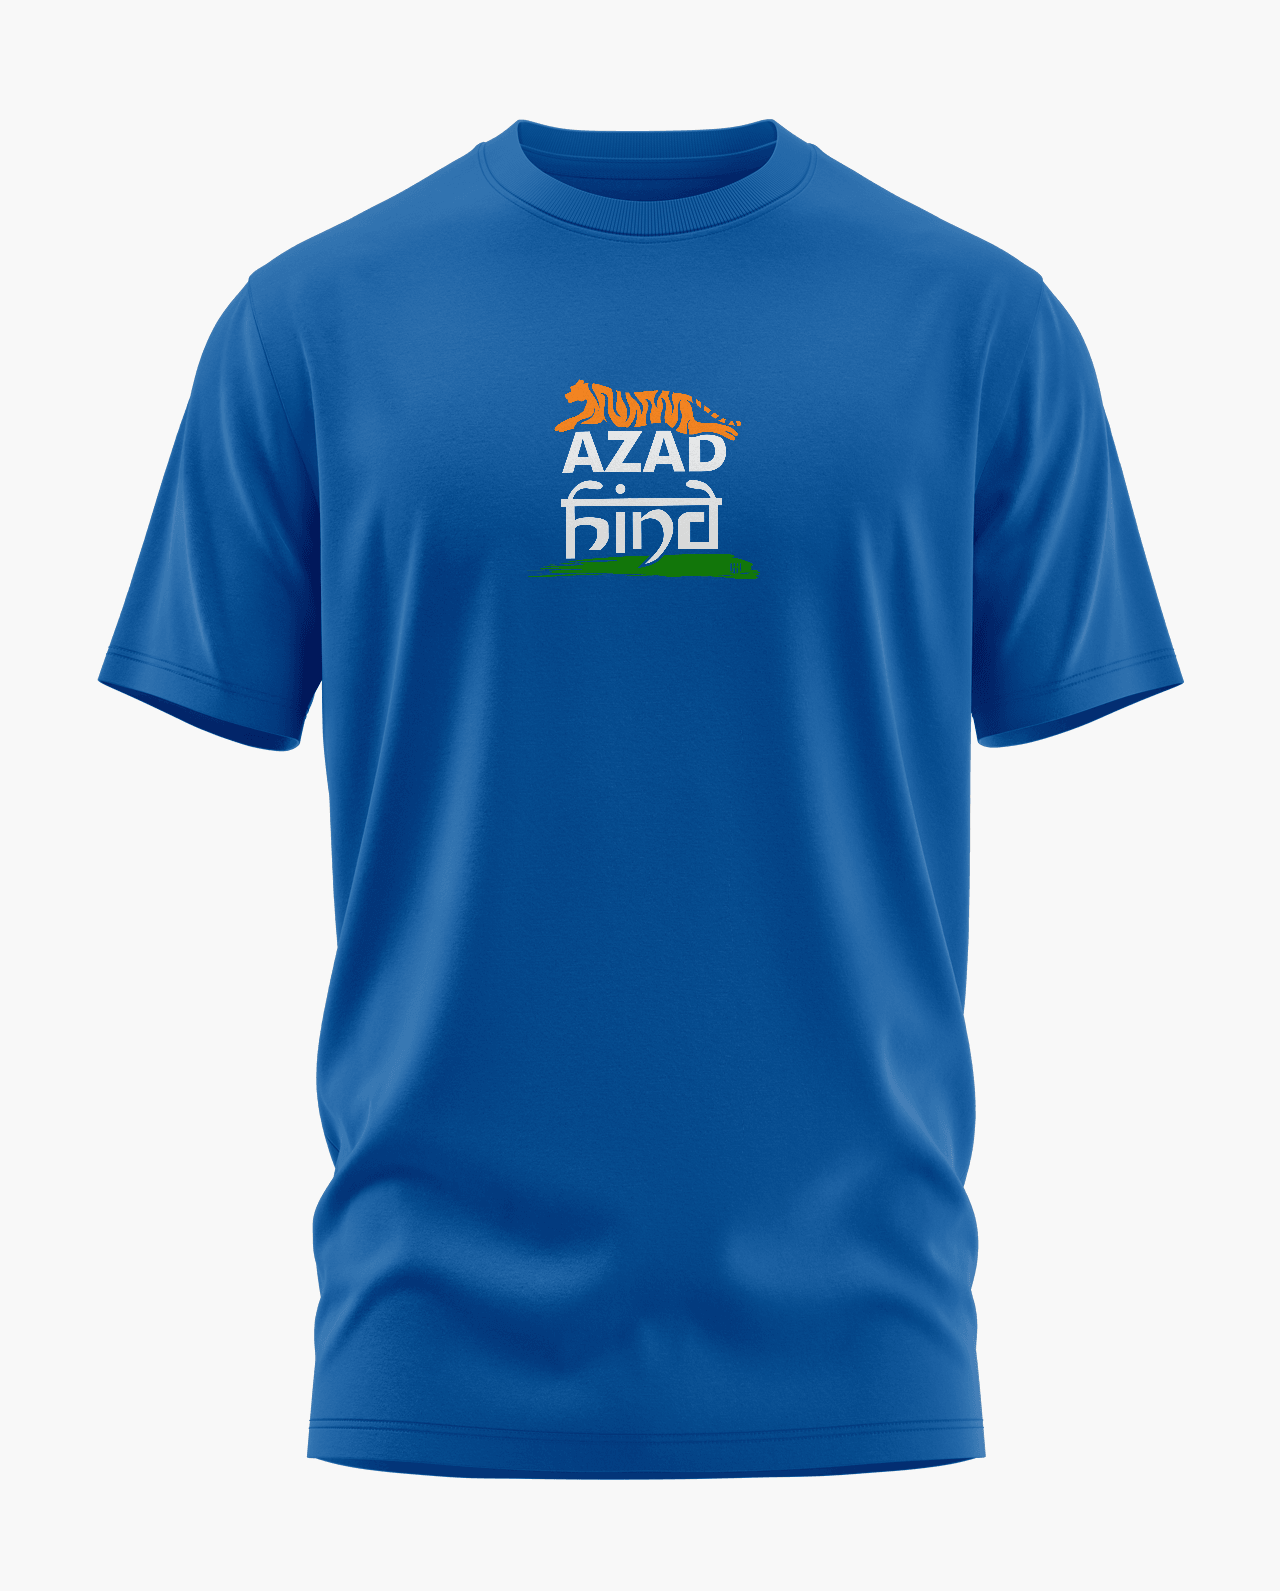 Azad Hind T-Shirt - Aero Armour